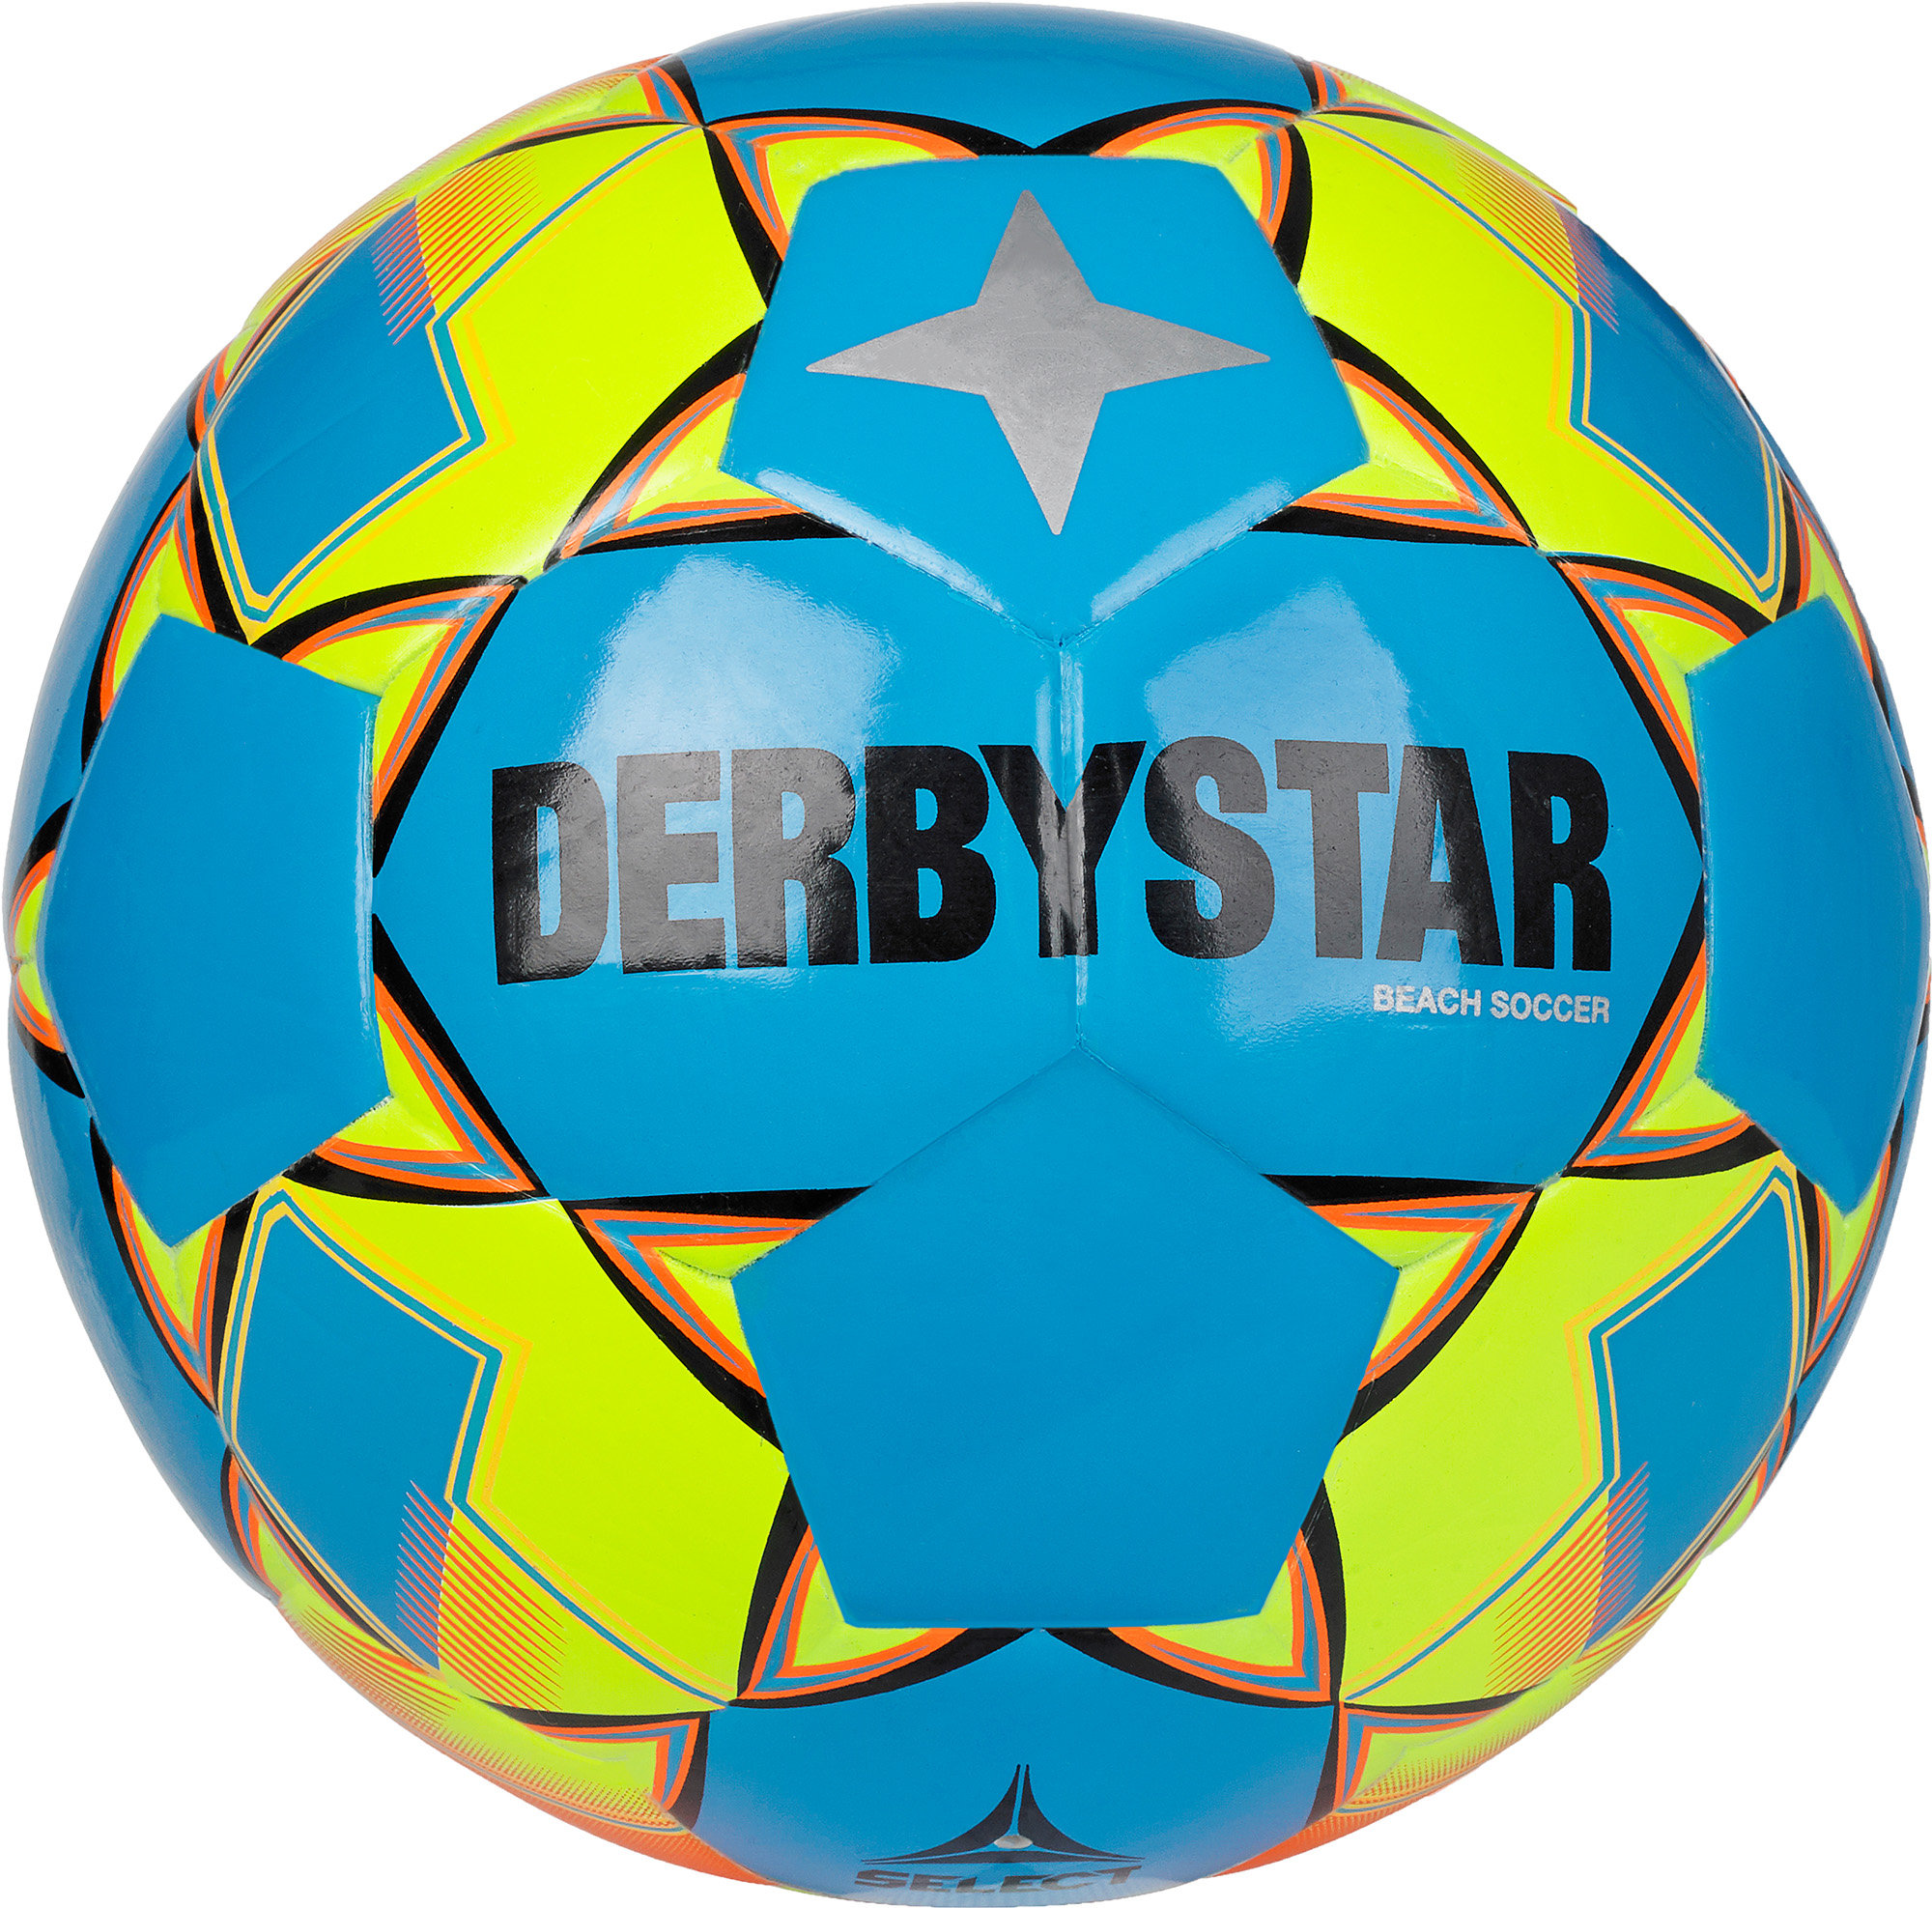 Derbystar Fußball (Freizeitball) Beach Soccer v22, Größe 5, blau gelb,  20,95 €